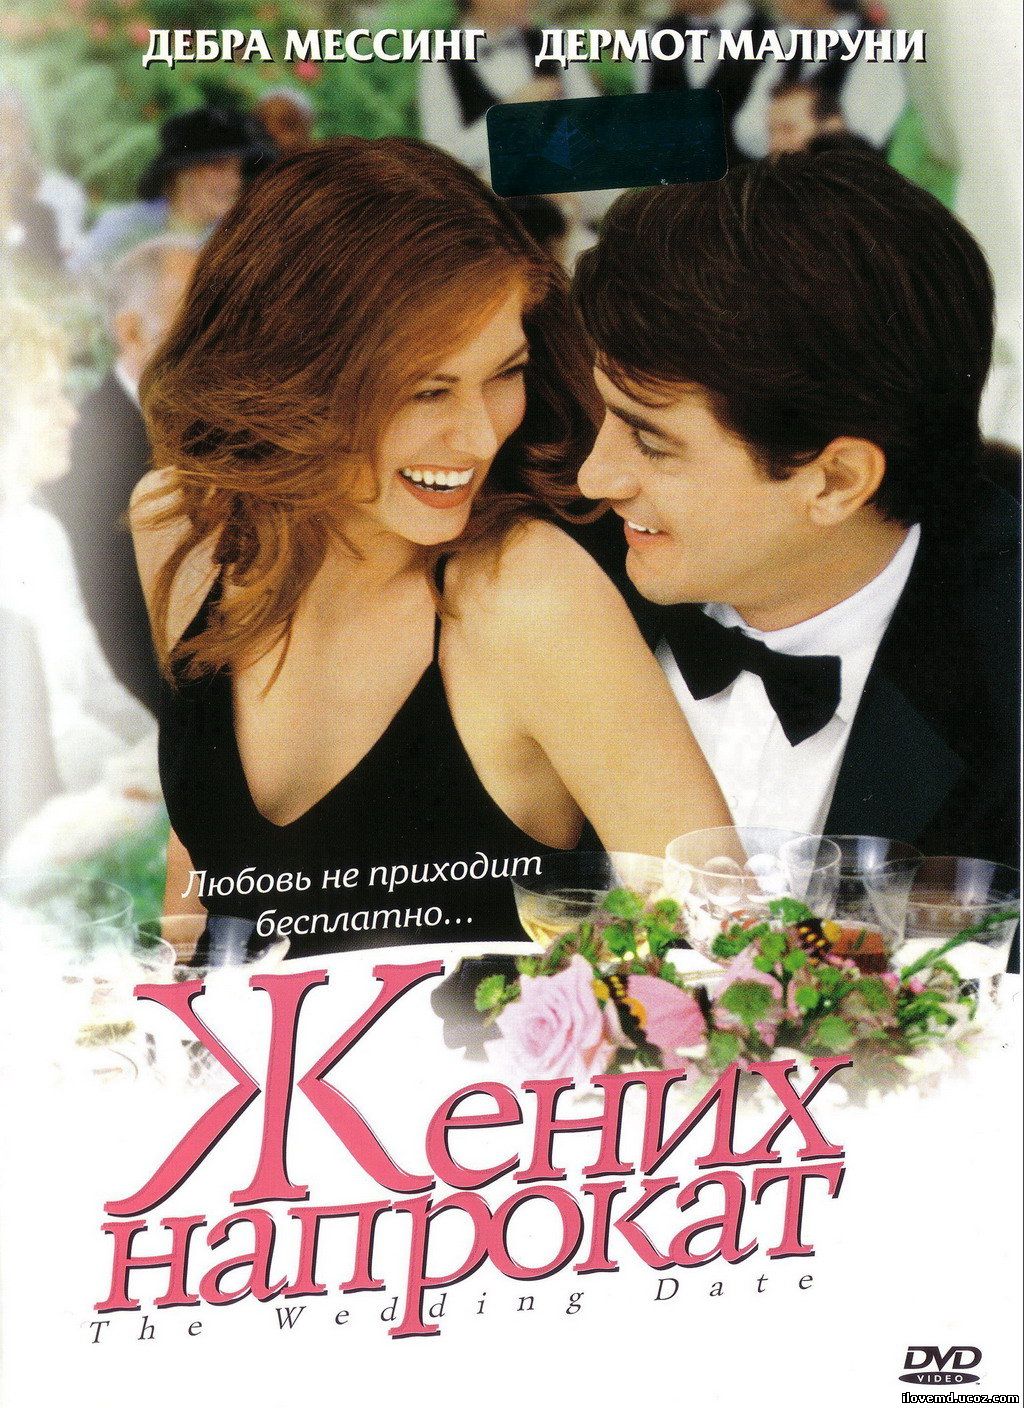 Кинофильмы прокат. Жених напрокат (2005) the Wedding Date. Дермот Малруни жених напрокат.